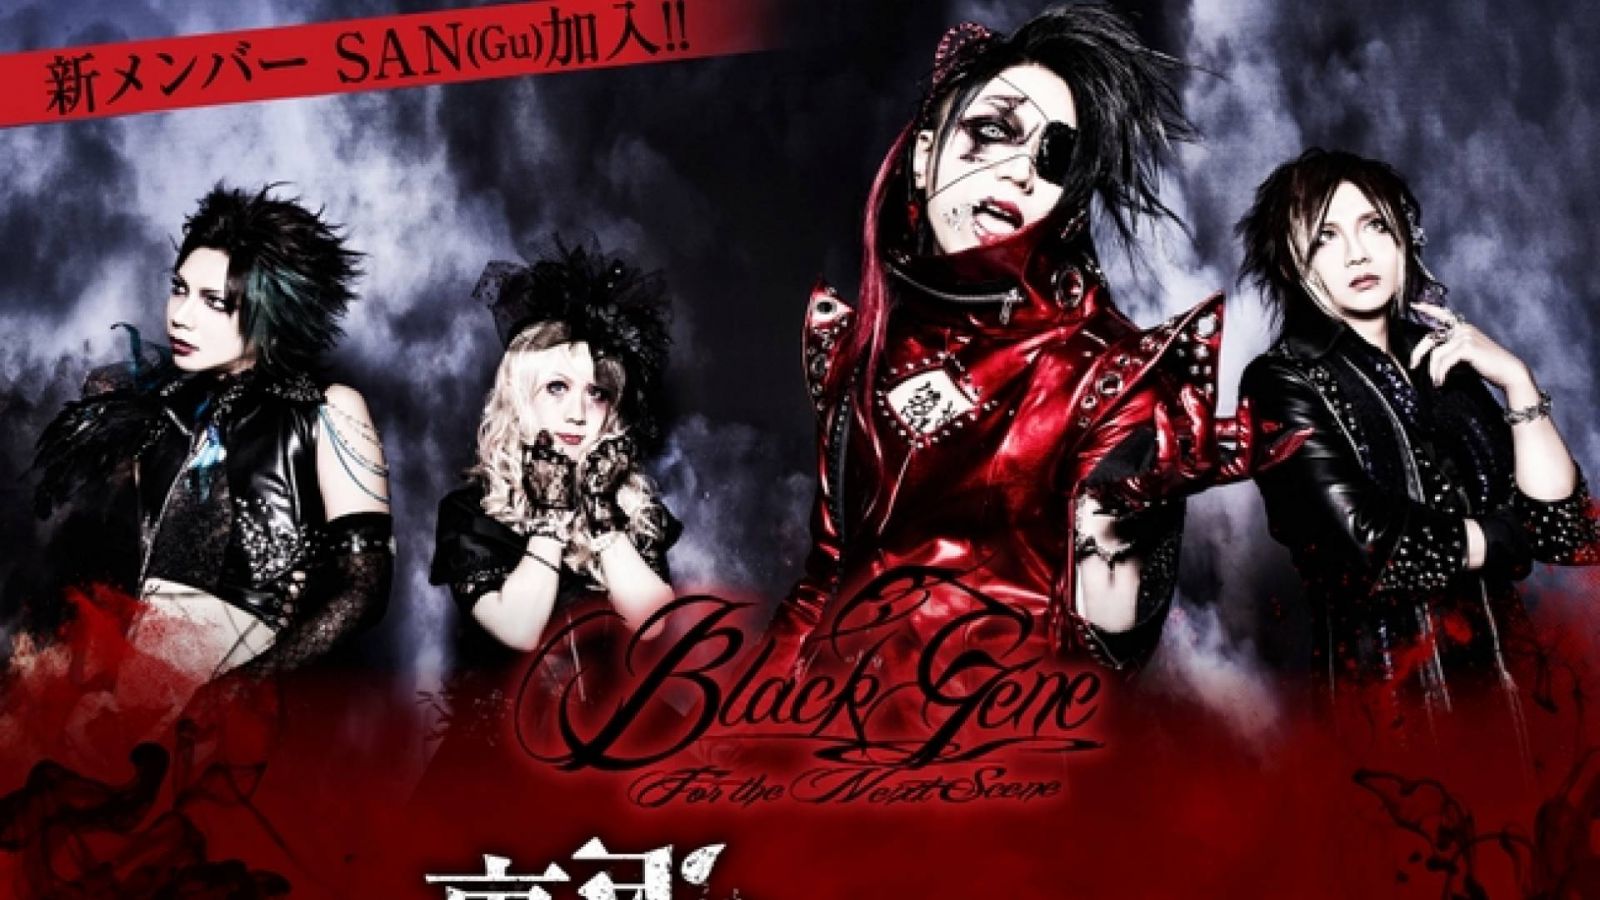 SAN Joins Black Gene For The Next Scene © Black Gene For the Next Scene